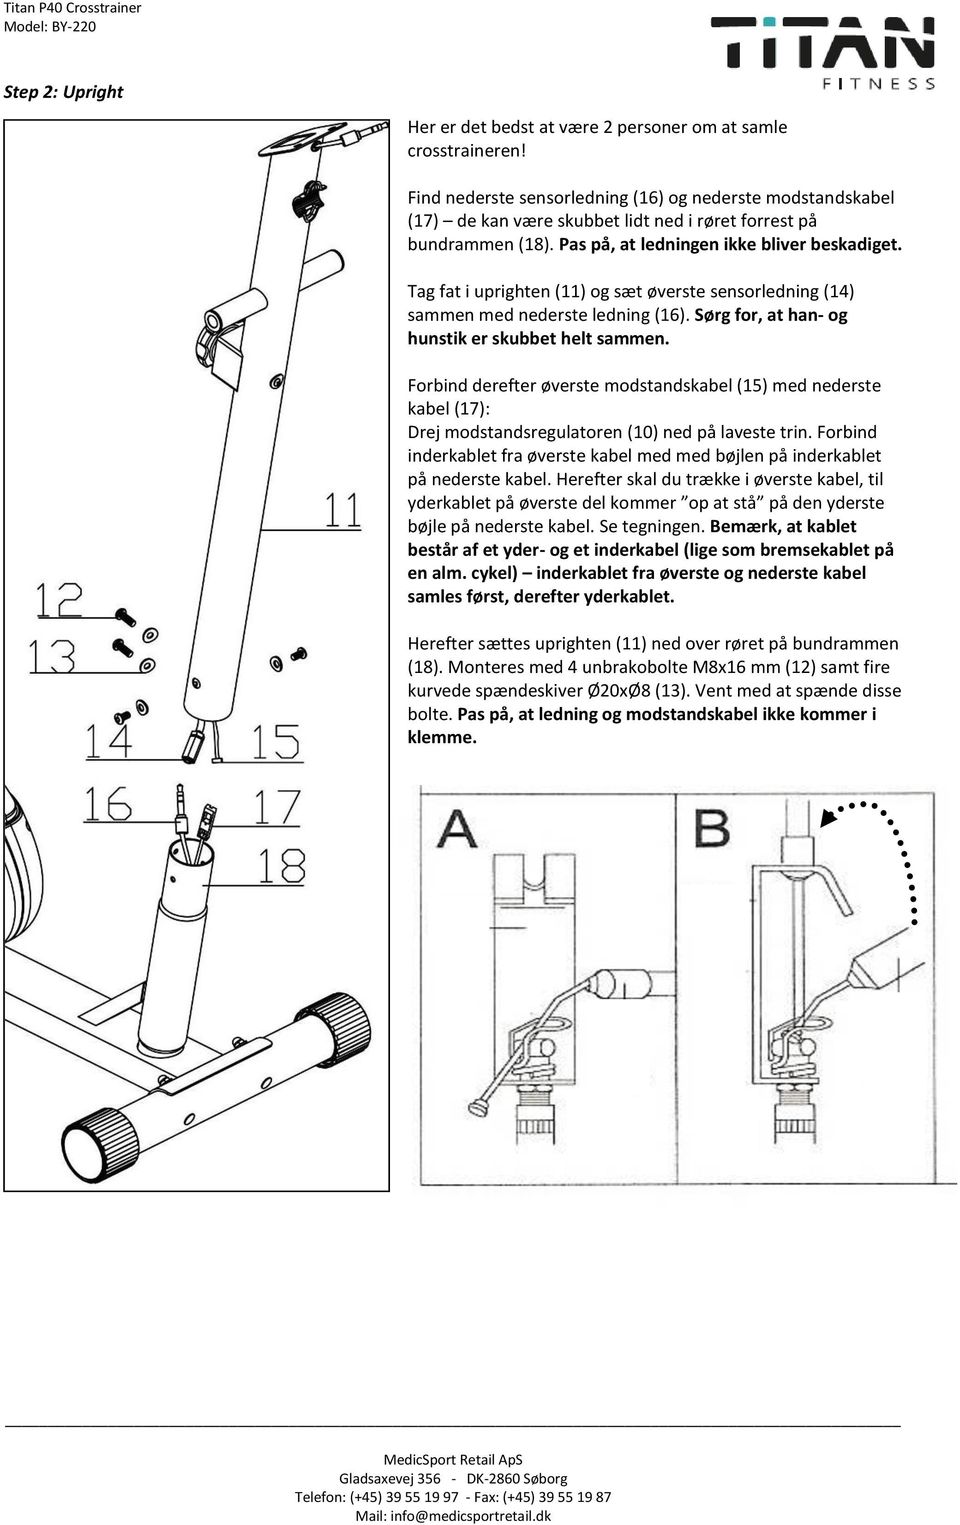 Tag fat i uprighten (11) og sæt øverste sensorledning (14) sammen med nederste ledning (16). Sørg for, at han- og hunstik er skubbet helt sammen.